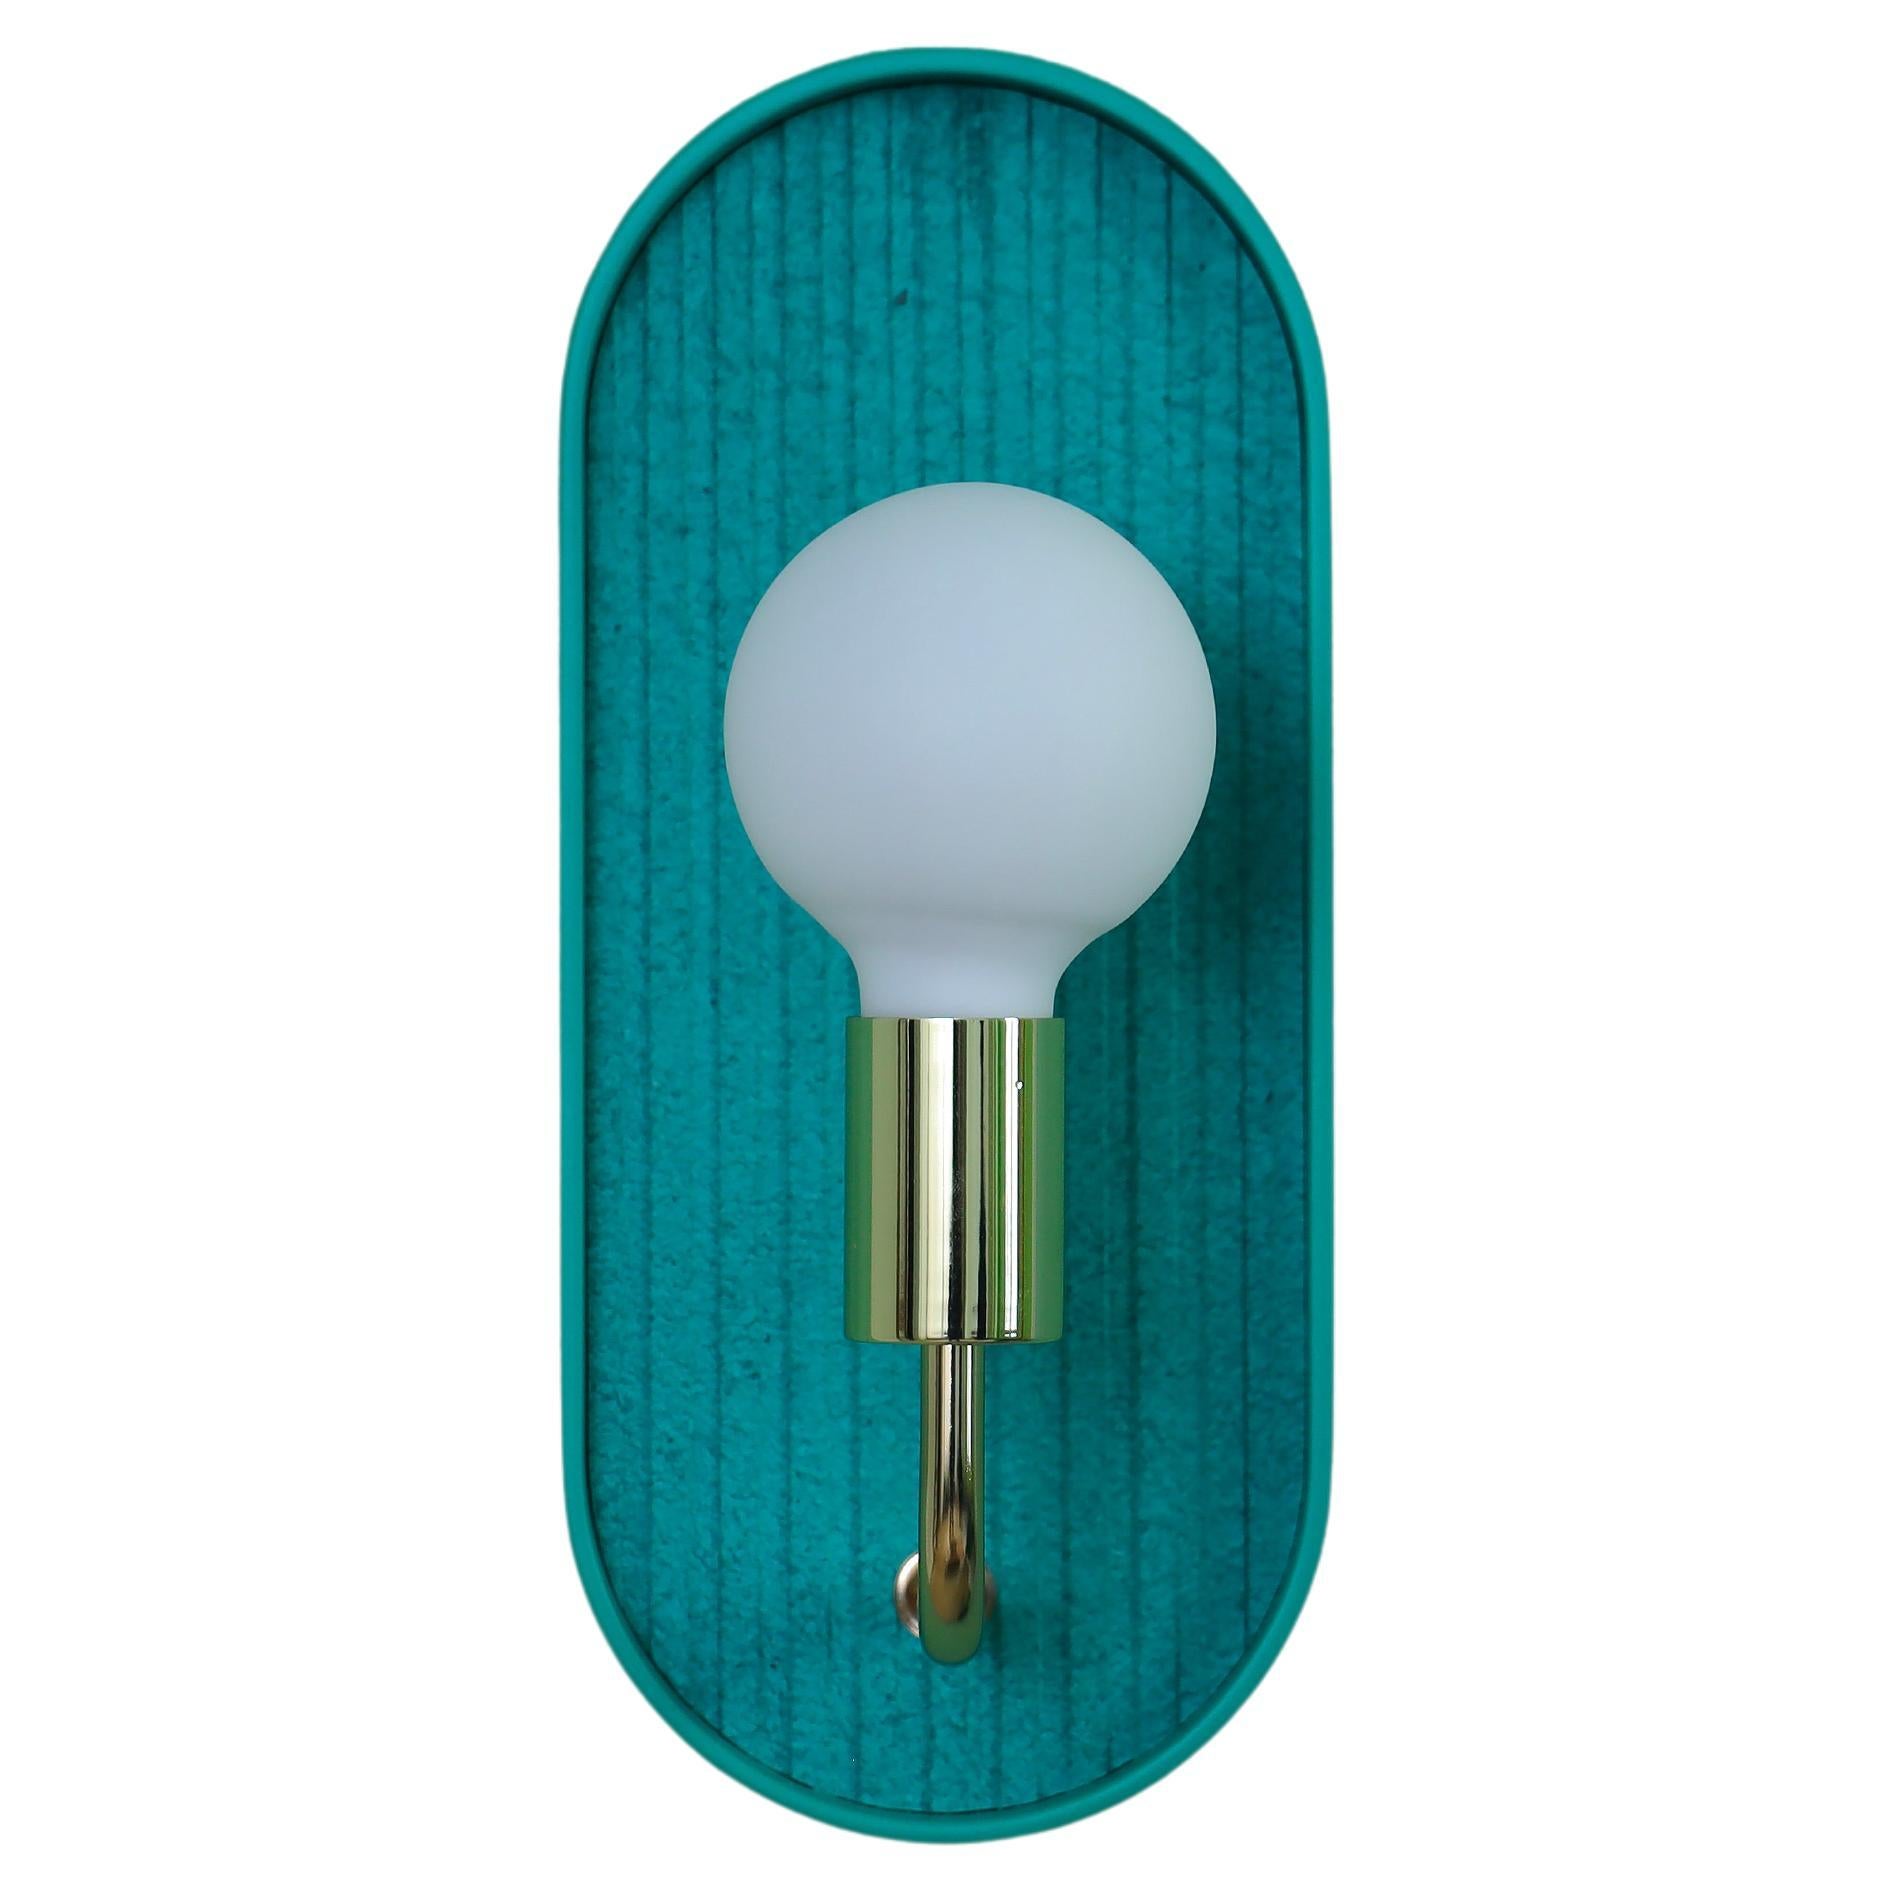 Bracketlamp Mini Oblong green - green  For Sale